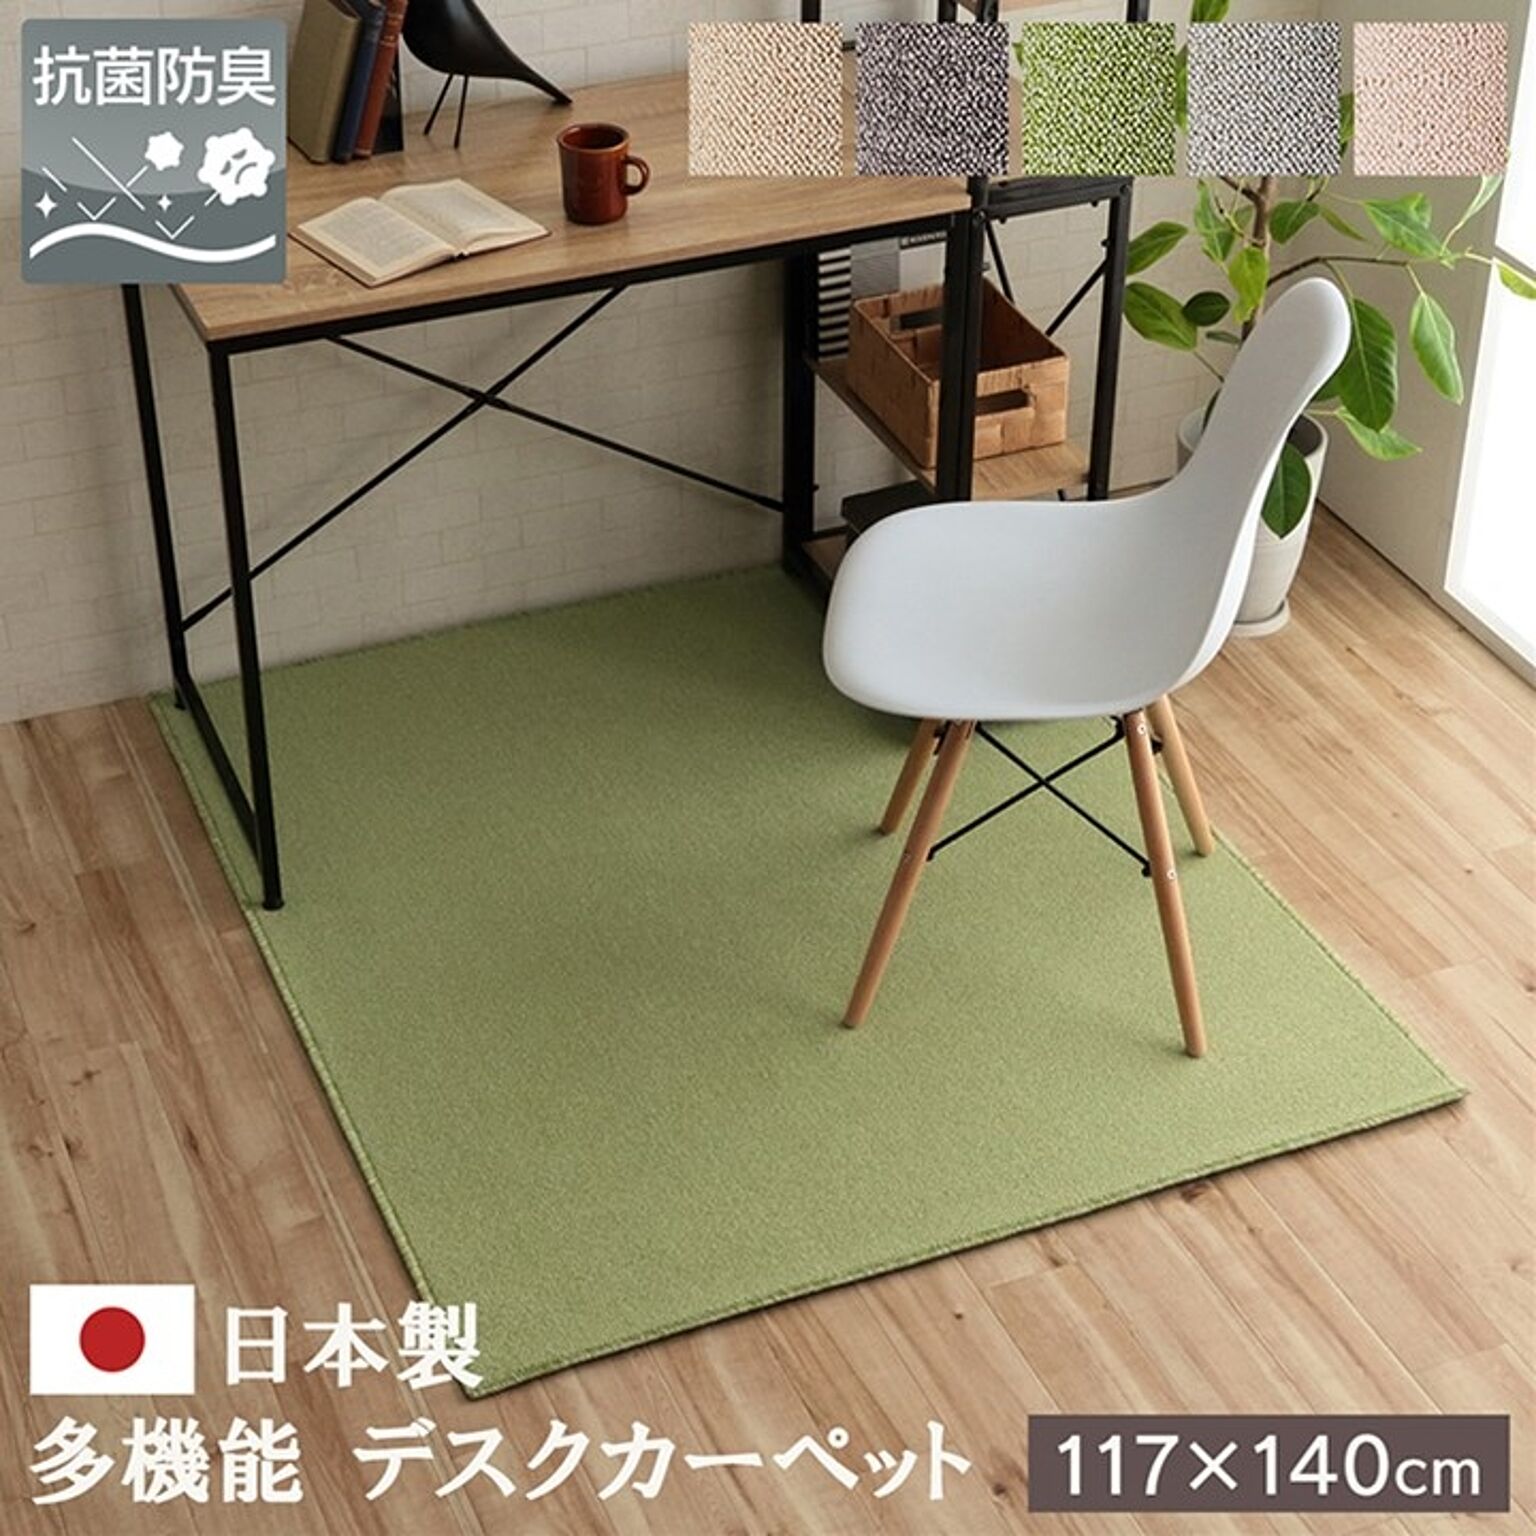 デスクカーペット  日本製 抗菌 消臭 清潔  撥水 抗アレル物質 ダニ対策 グリーン 約117×140cm【グリーン】